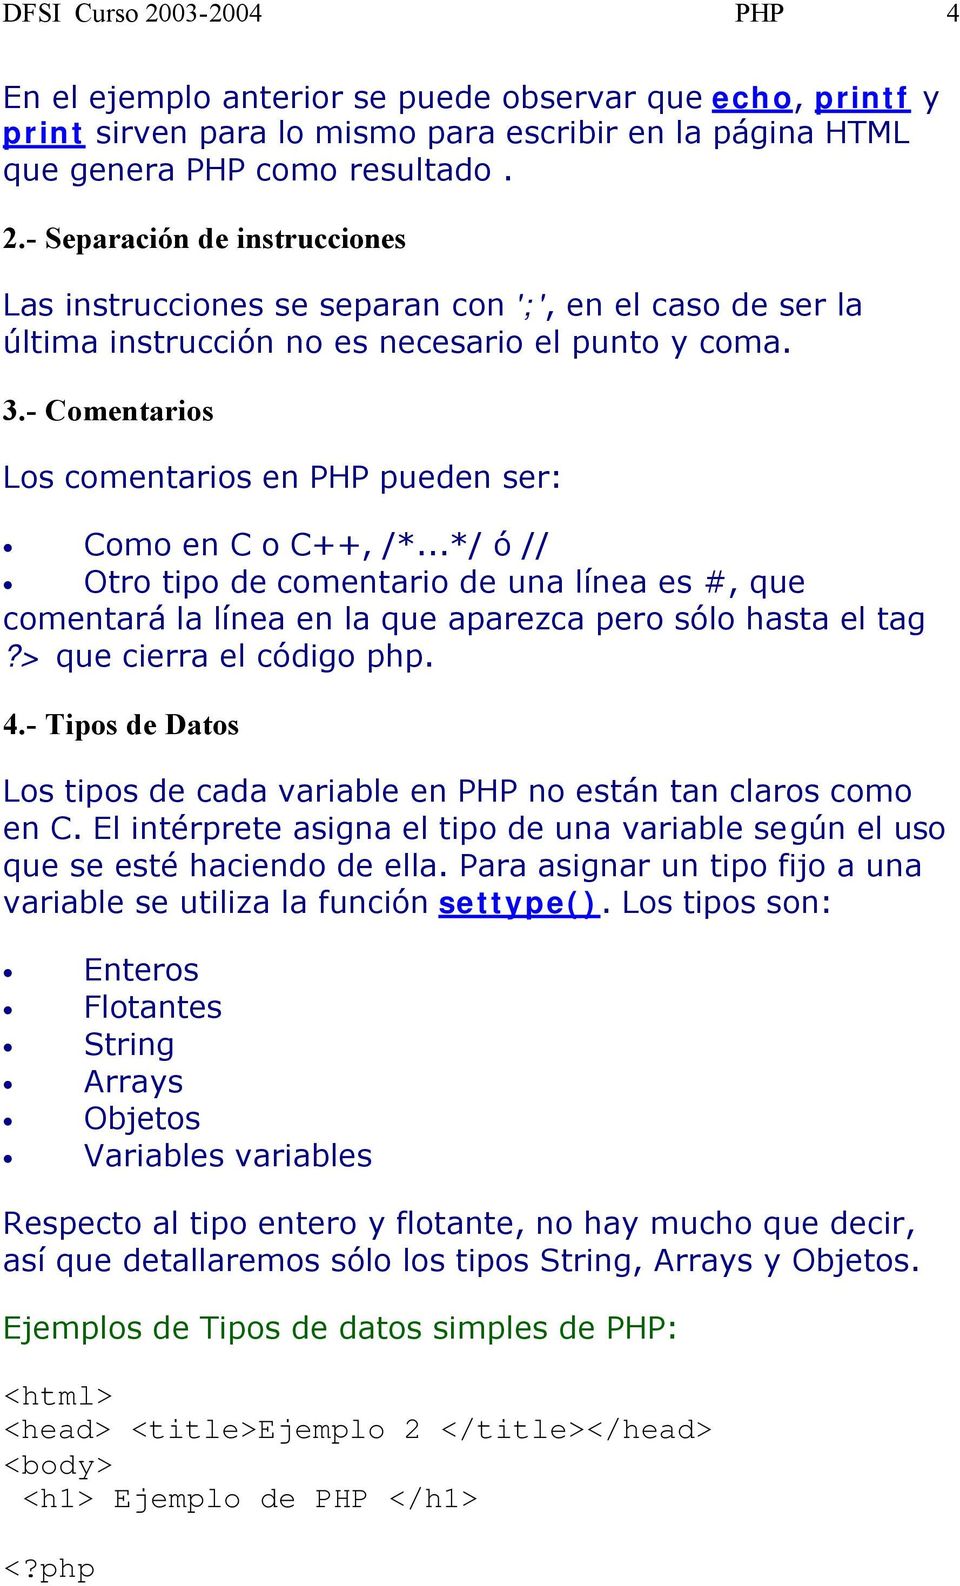 - Tips de Dats Ls tips de cada variable en PHP n están tan clars cm en C. El intérprete asigna el tip de una variable según el us que se esté haciend de ella.